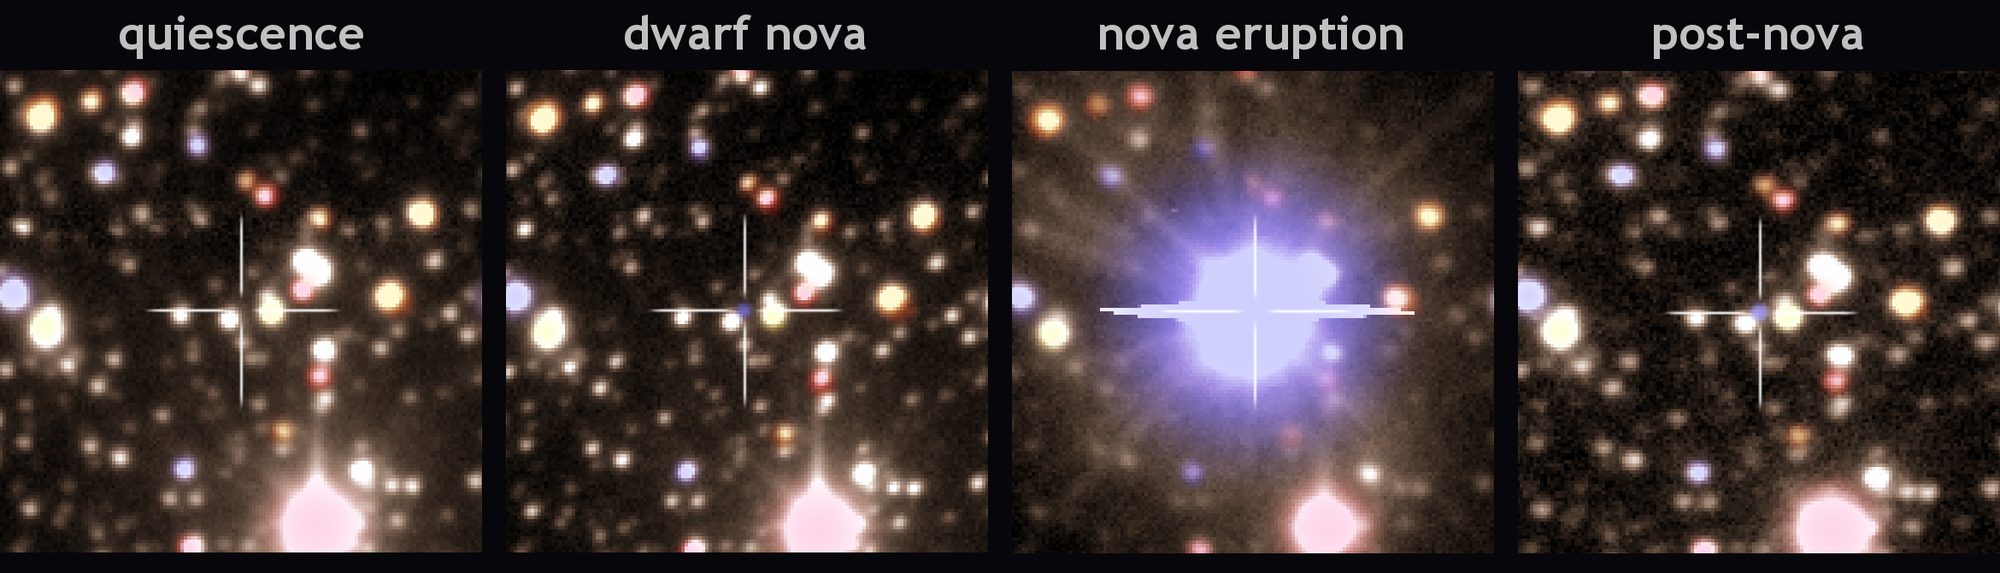 Die unterschiedlichen Aktivitätsphasen der Nova V1213 Centauri / Reihendarstellung